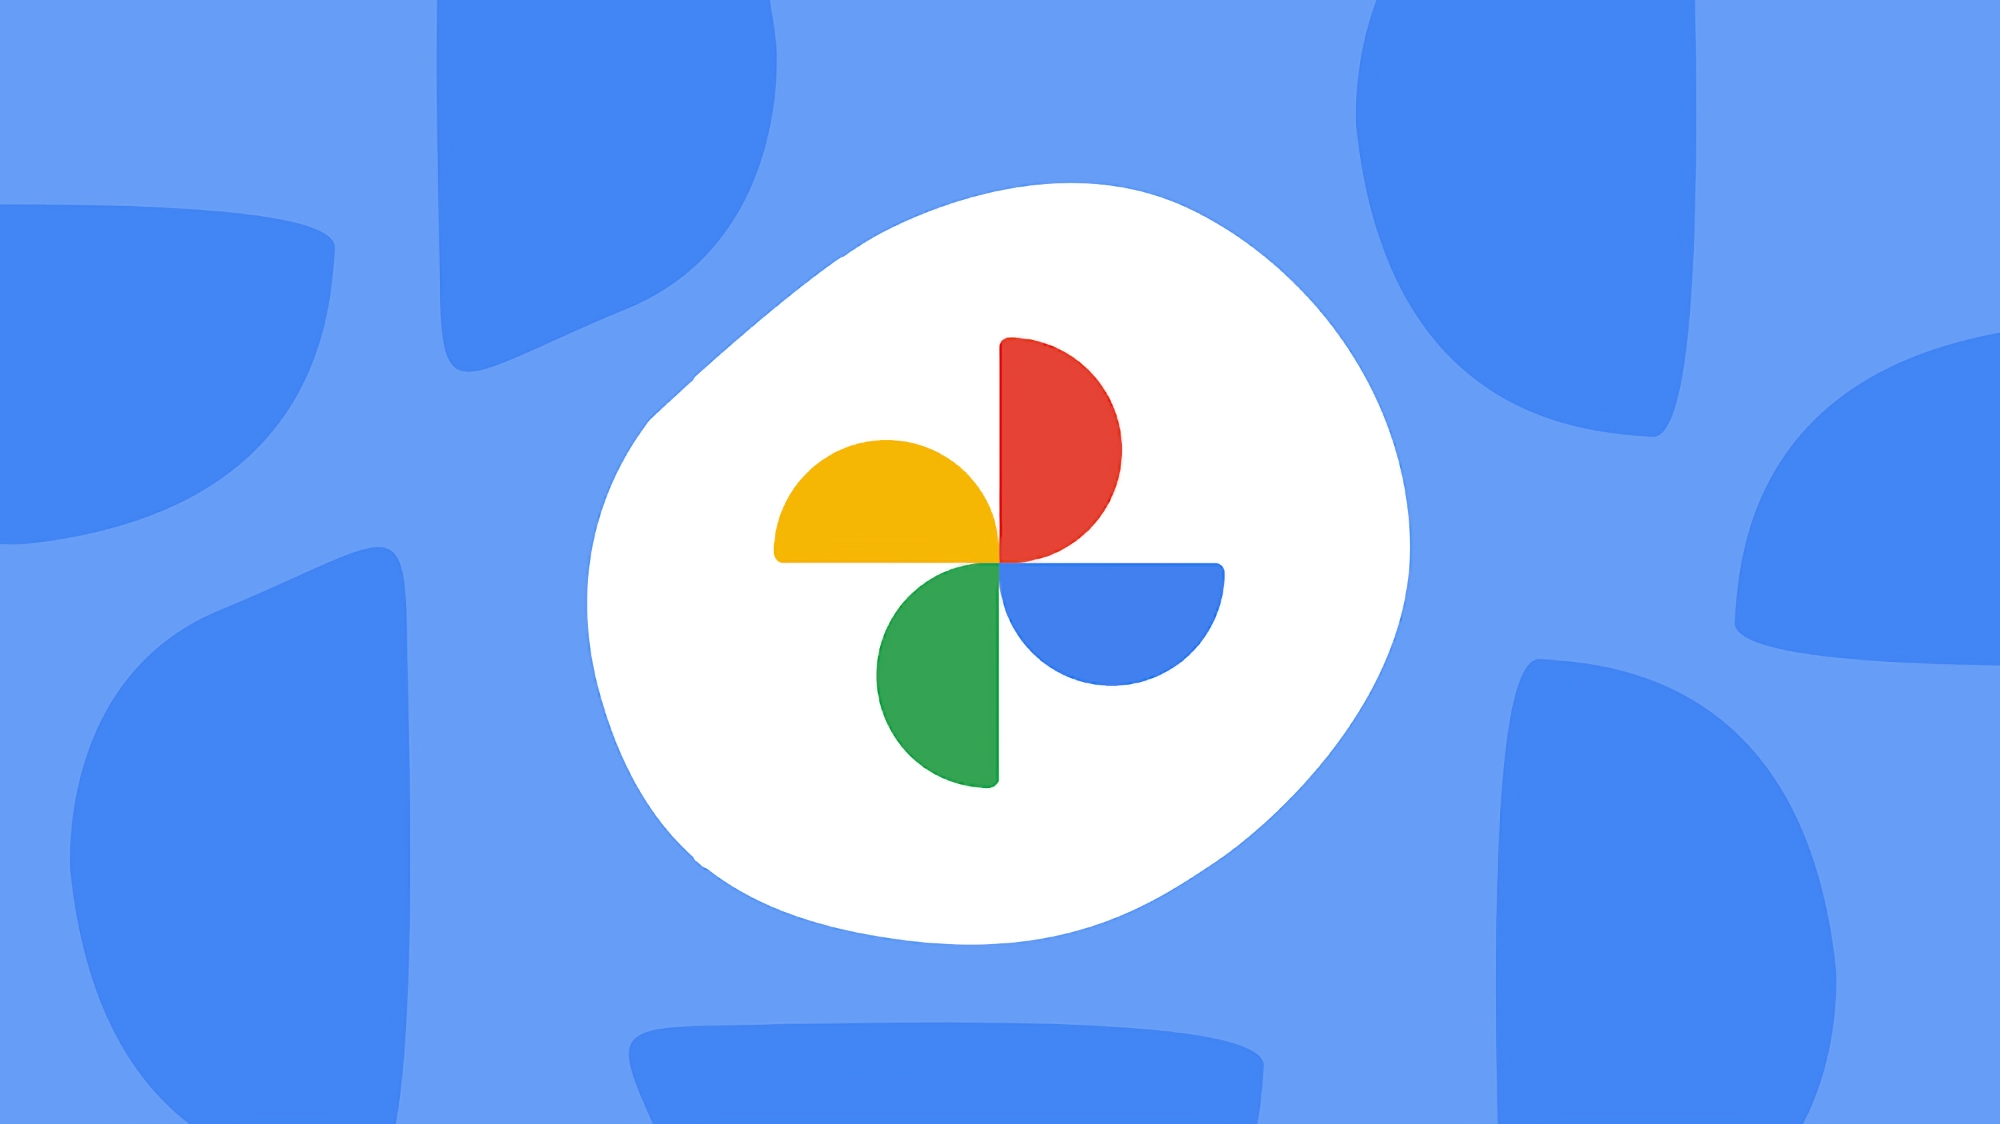 Webbversionen av Google Foto har nya funktioner för fotoredigering